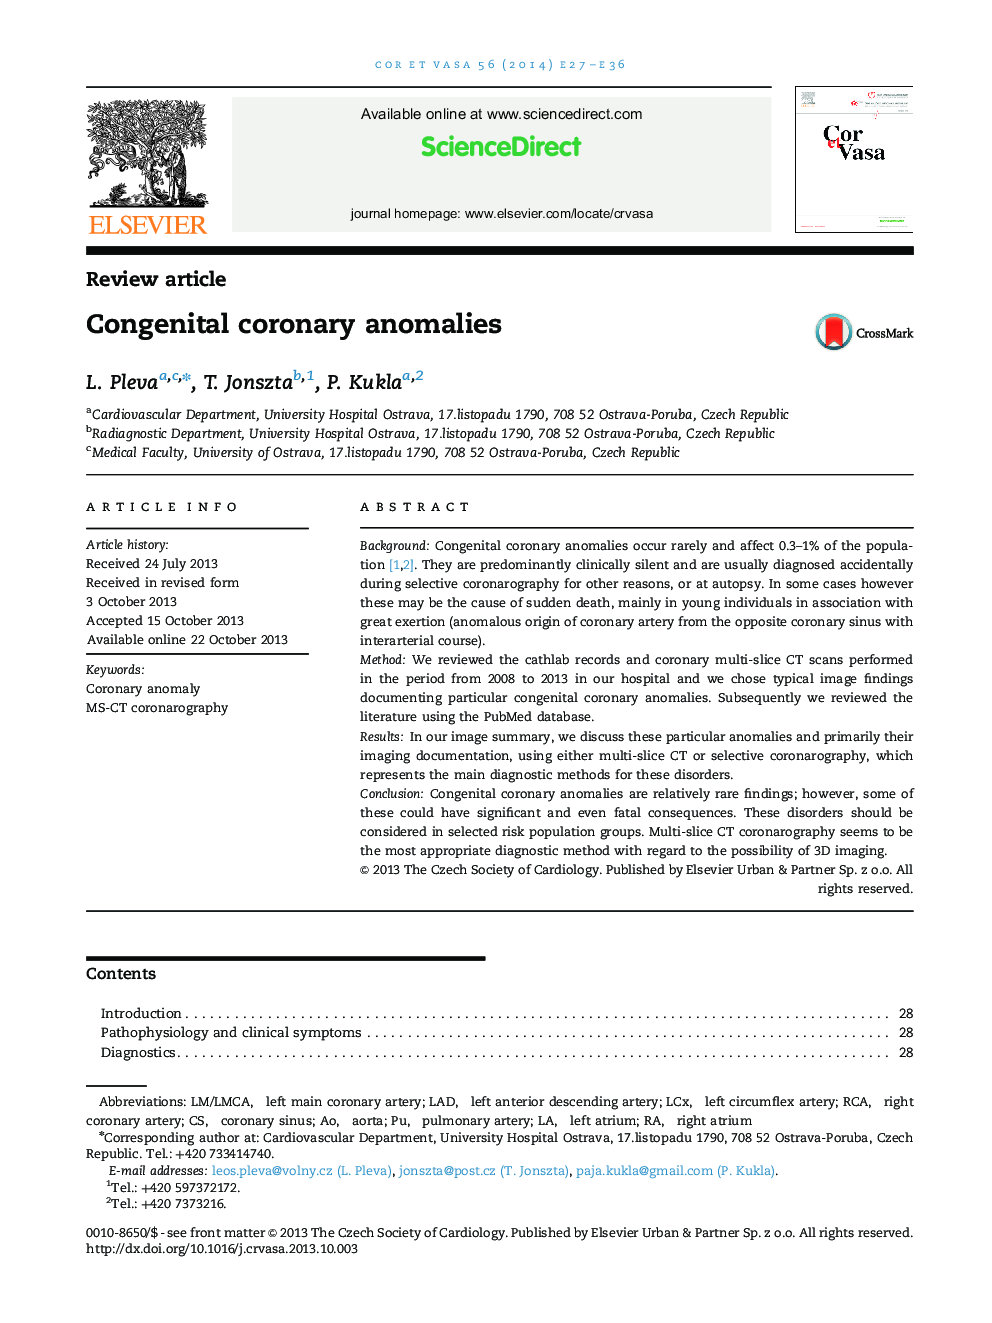 Congenital coronary anomalies